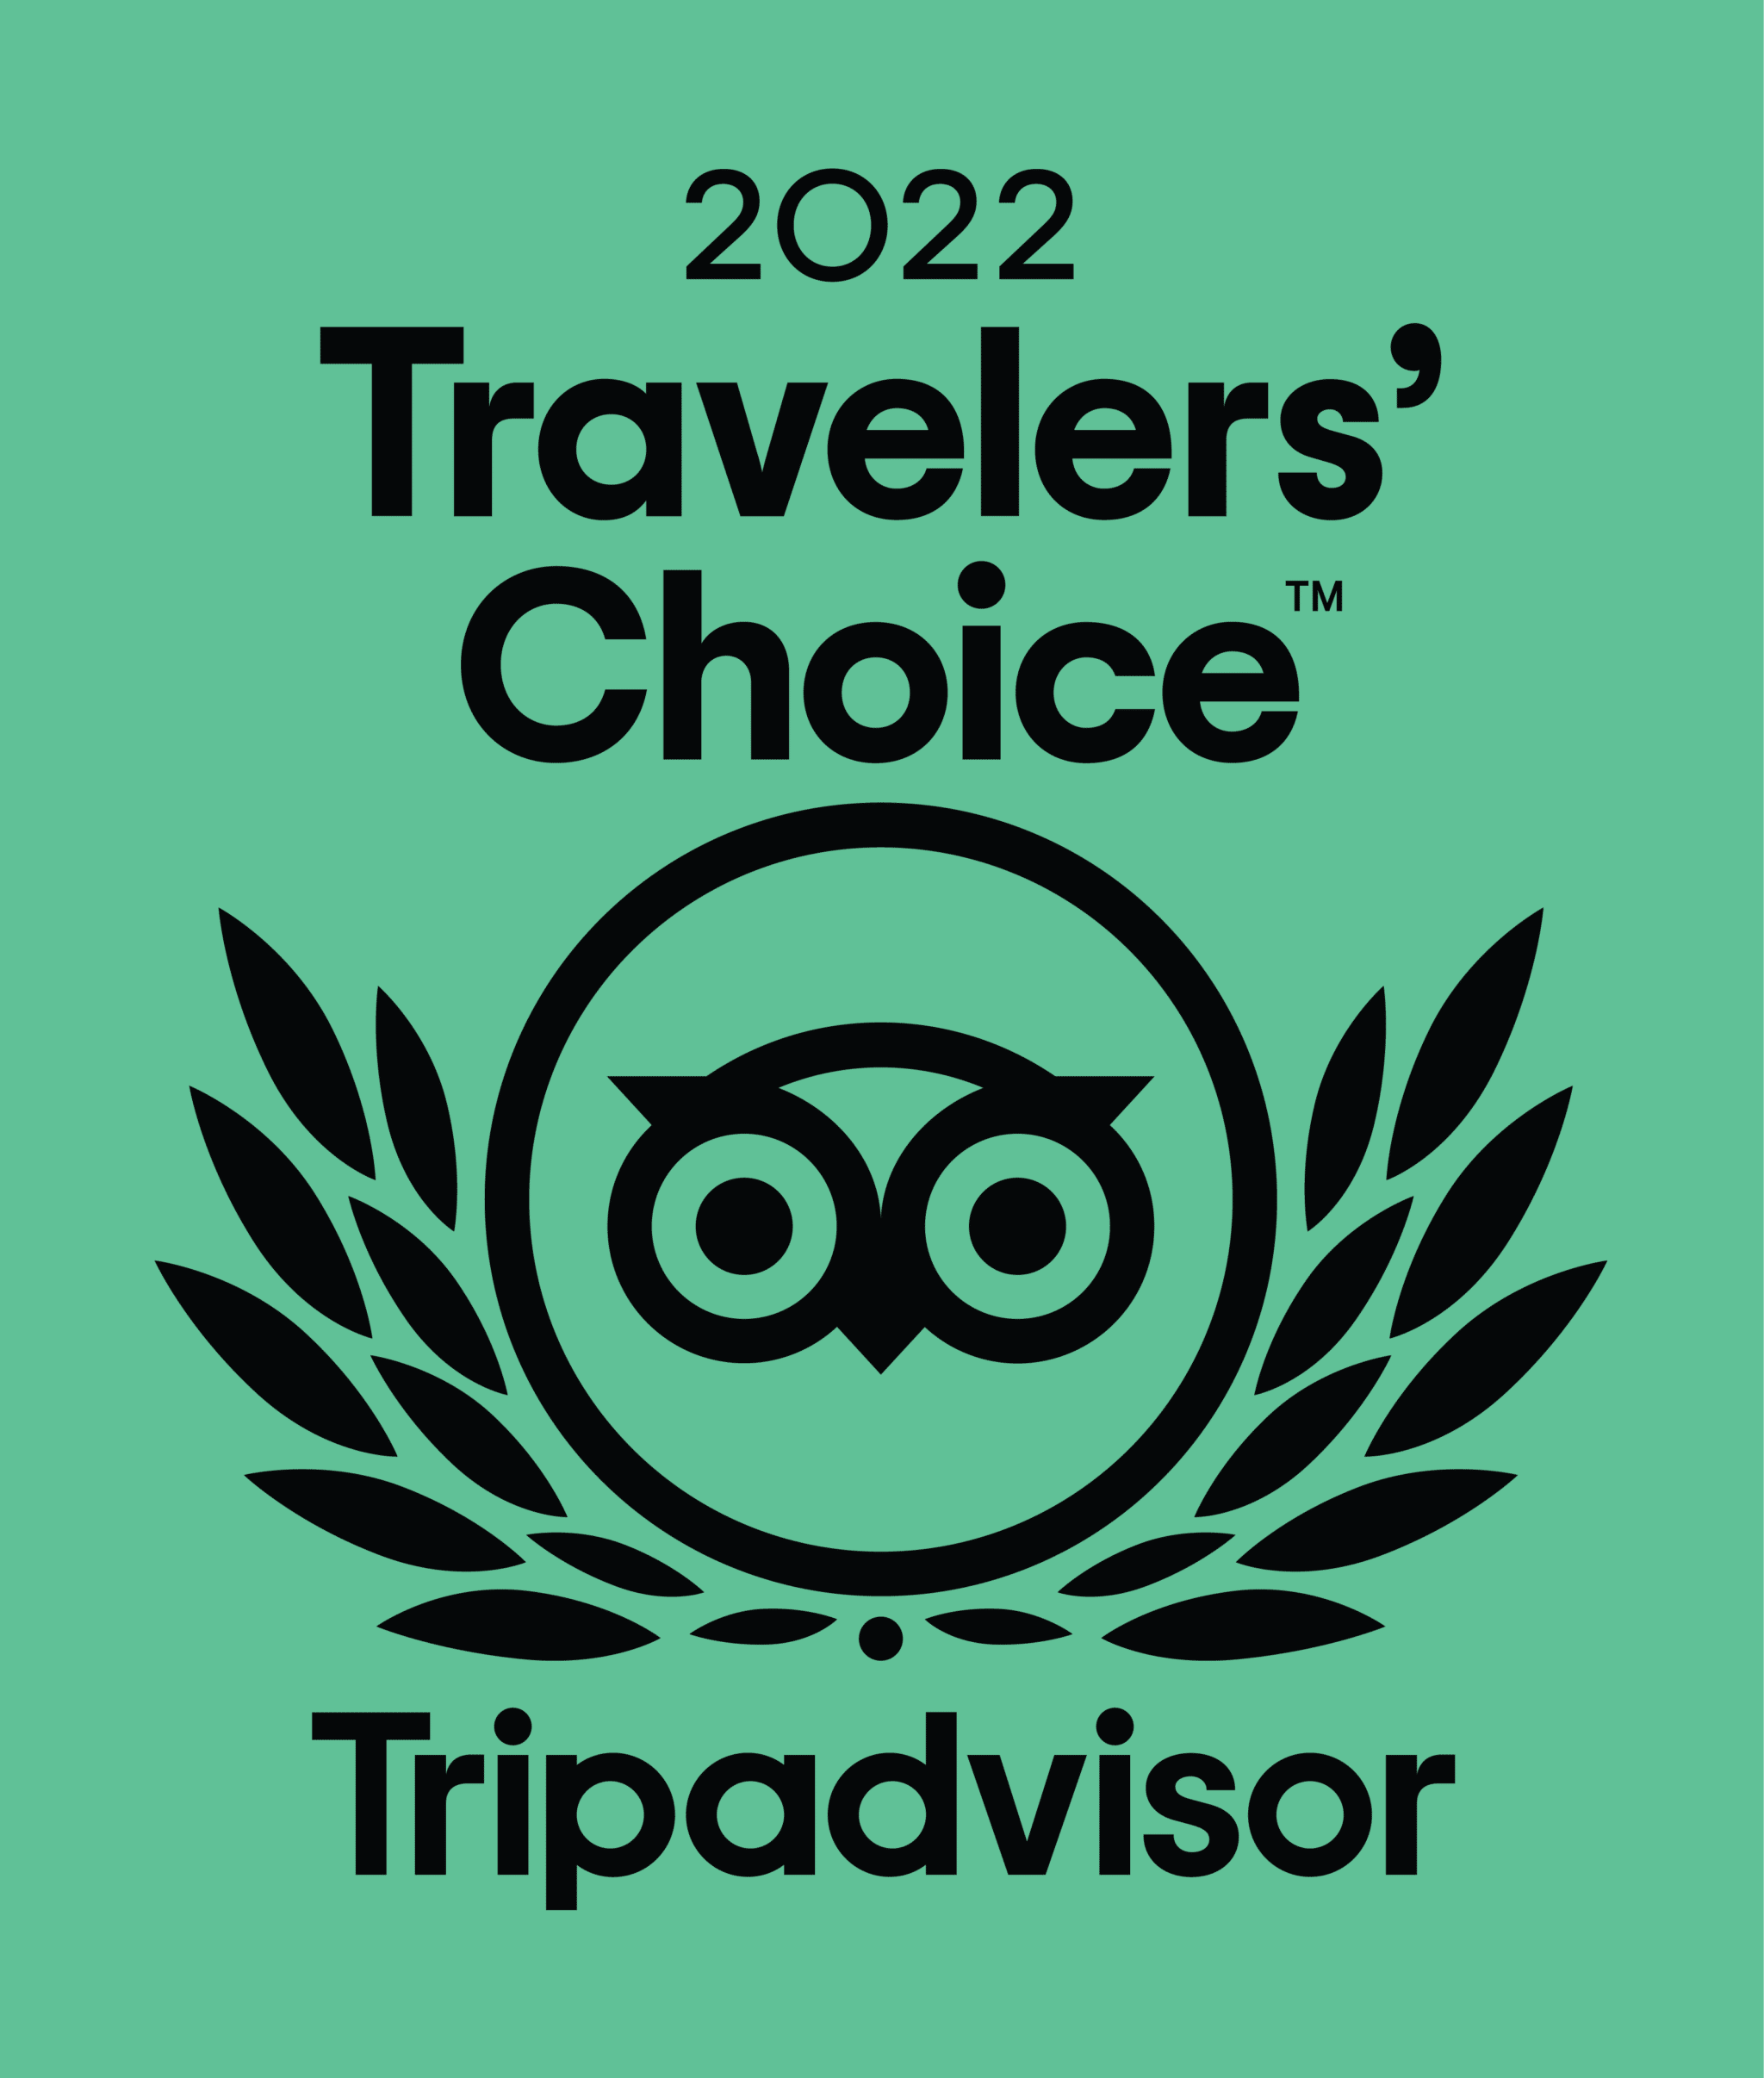 trip advisor travelers choice 2022